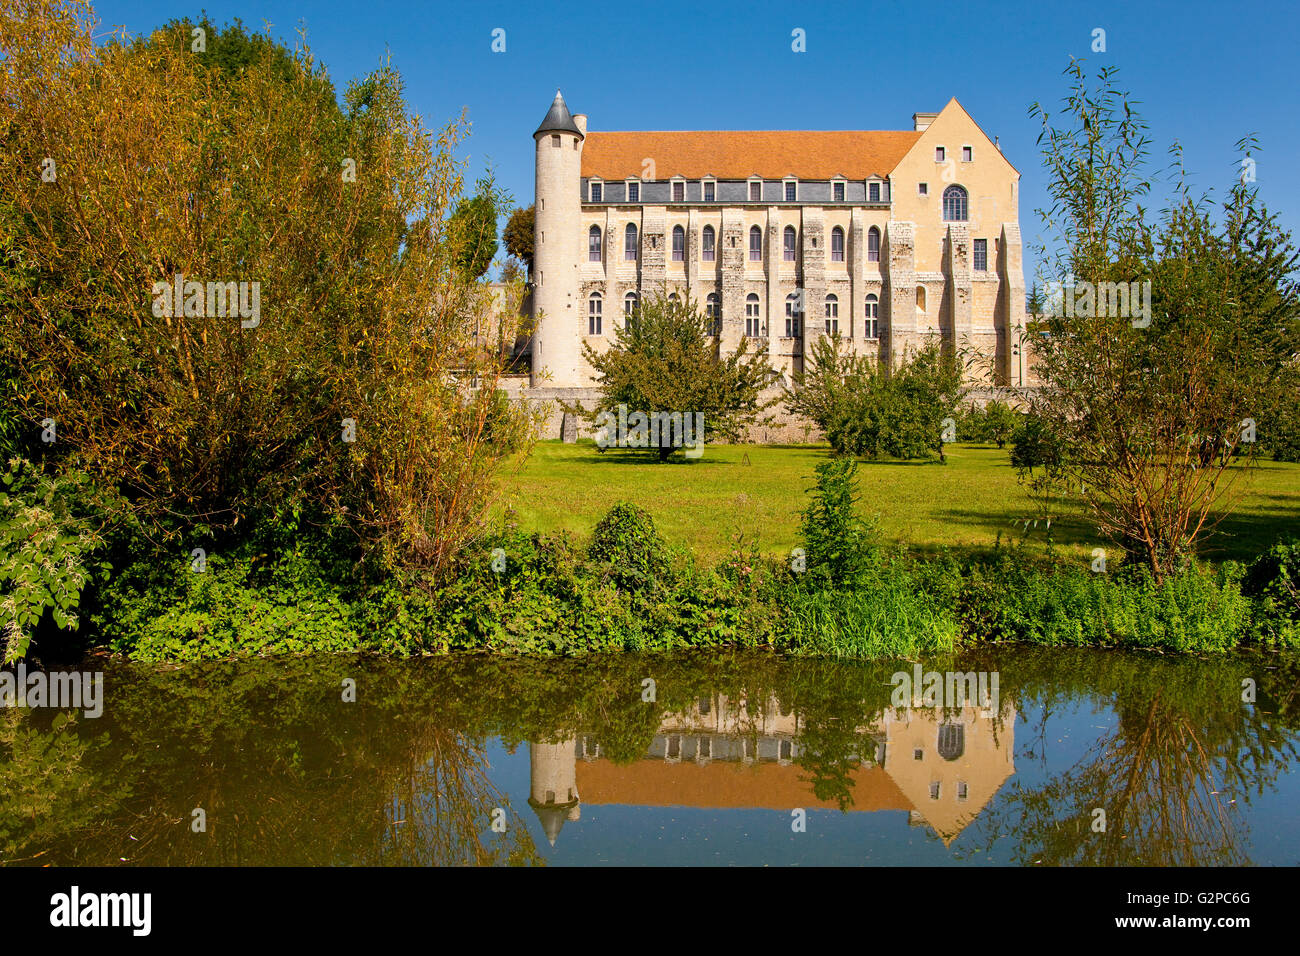 Abbey Saint-Séverin, Château Landon, France Stock Photo